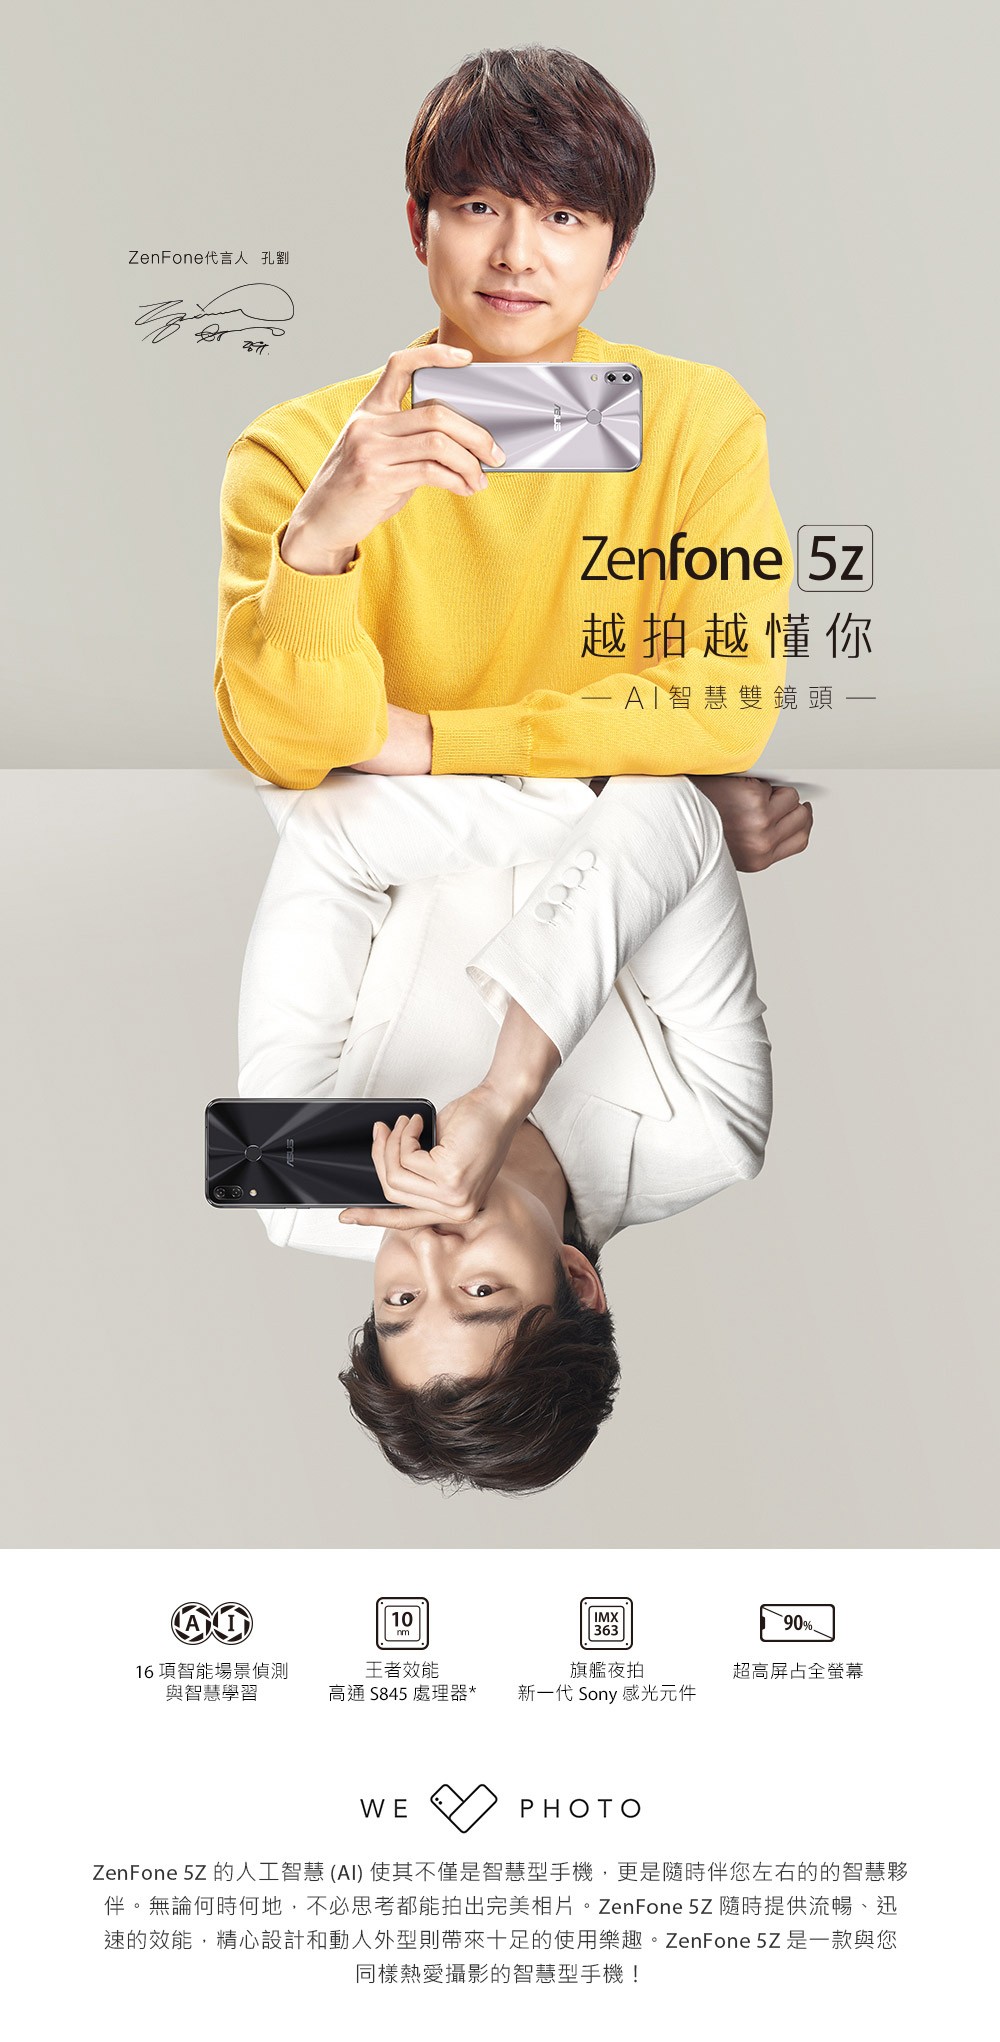 ASUS ZenFone 5Z 開箱 、評測、評價 超強效能、智慧雙鏡頭 - 電腦王阿達